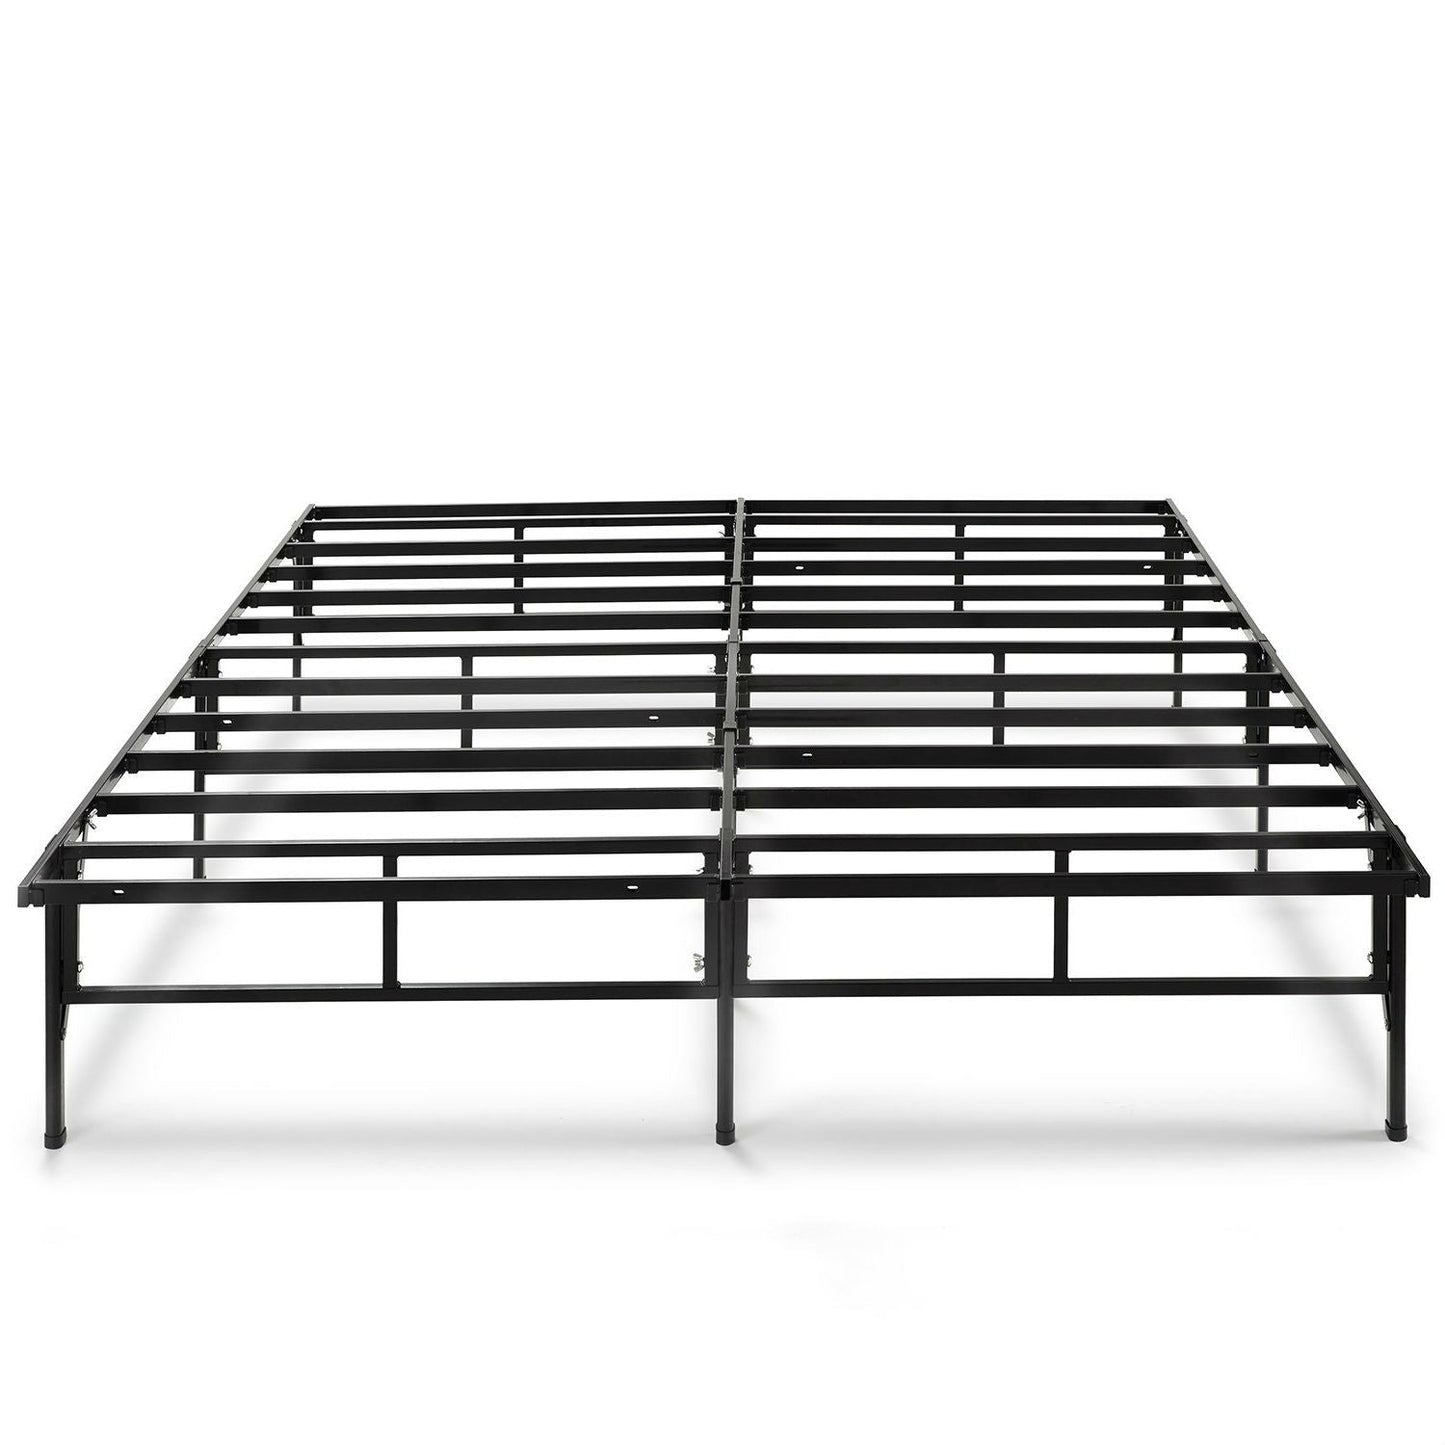 Bedroom > Bed Frames > Platform Beds - Queen Size Sturdy Black Metal Platform Bed Frame